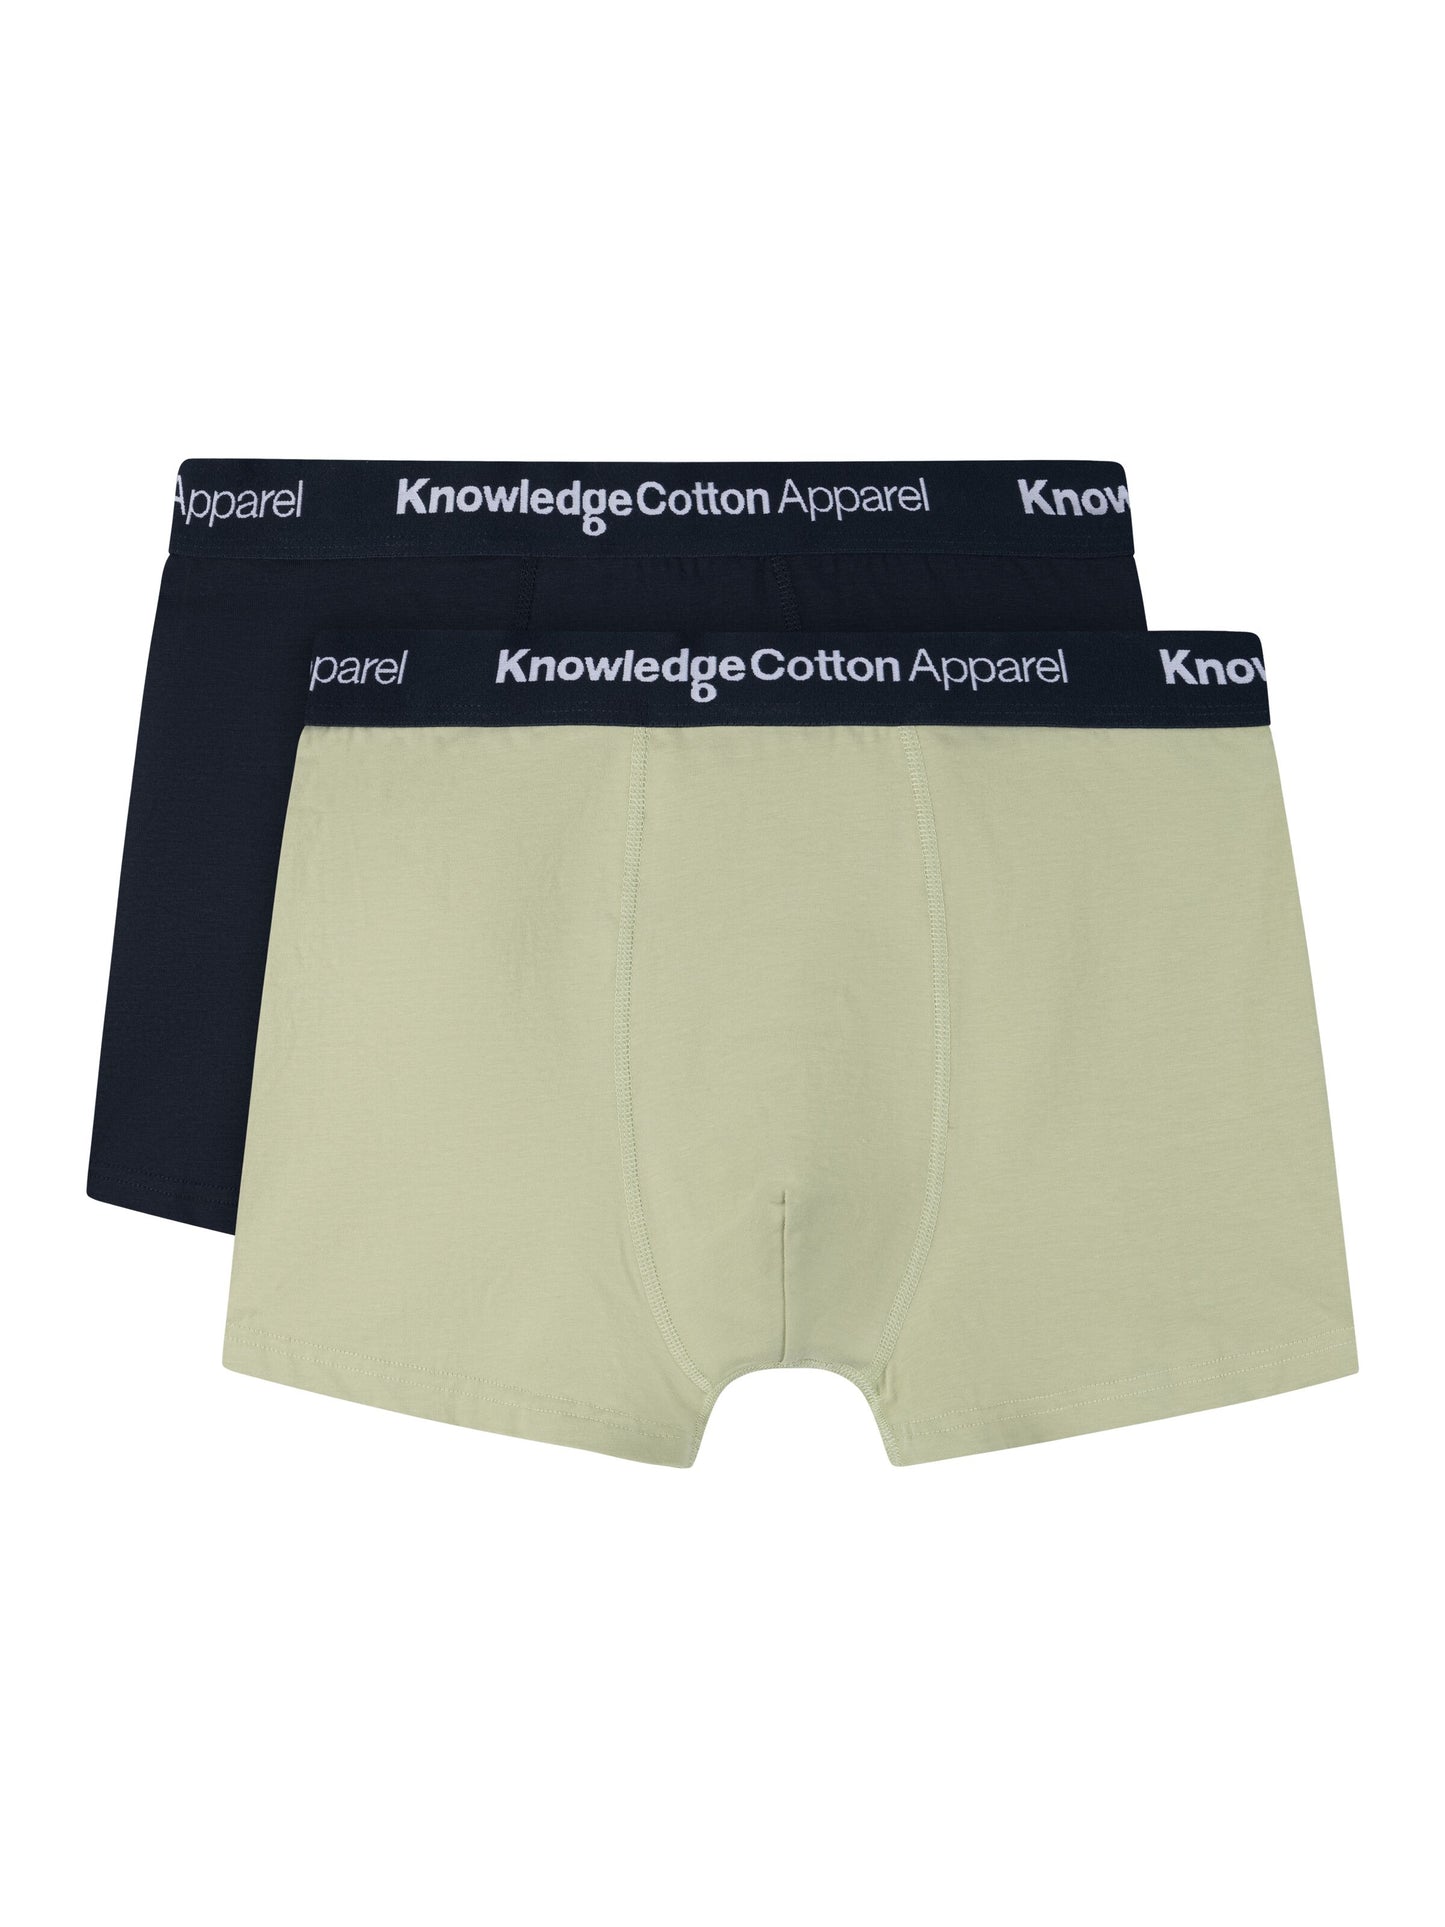 KnowledgeCotton Apparel Underwear Maple 2-Pack